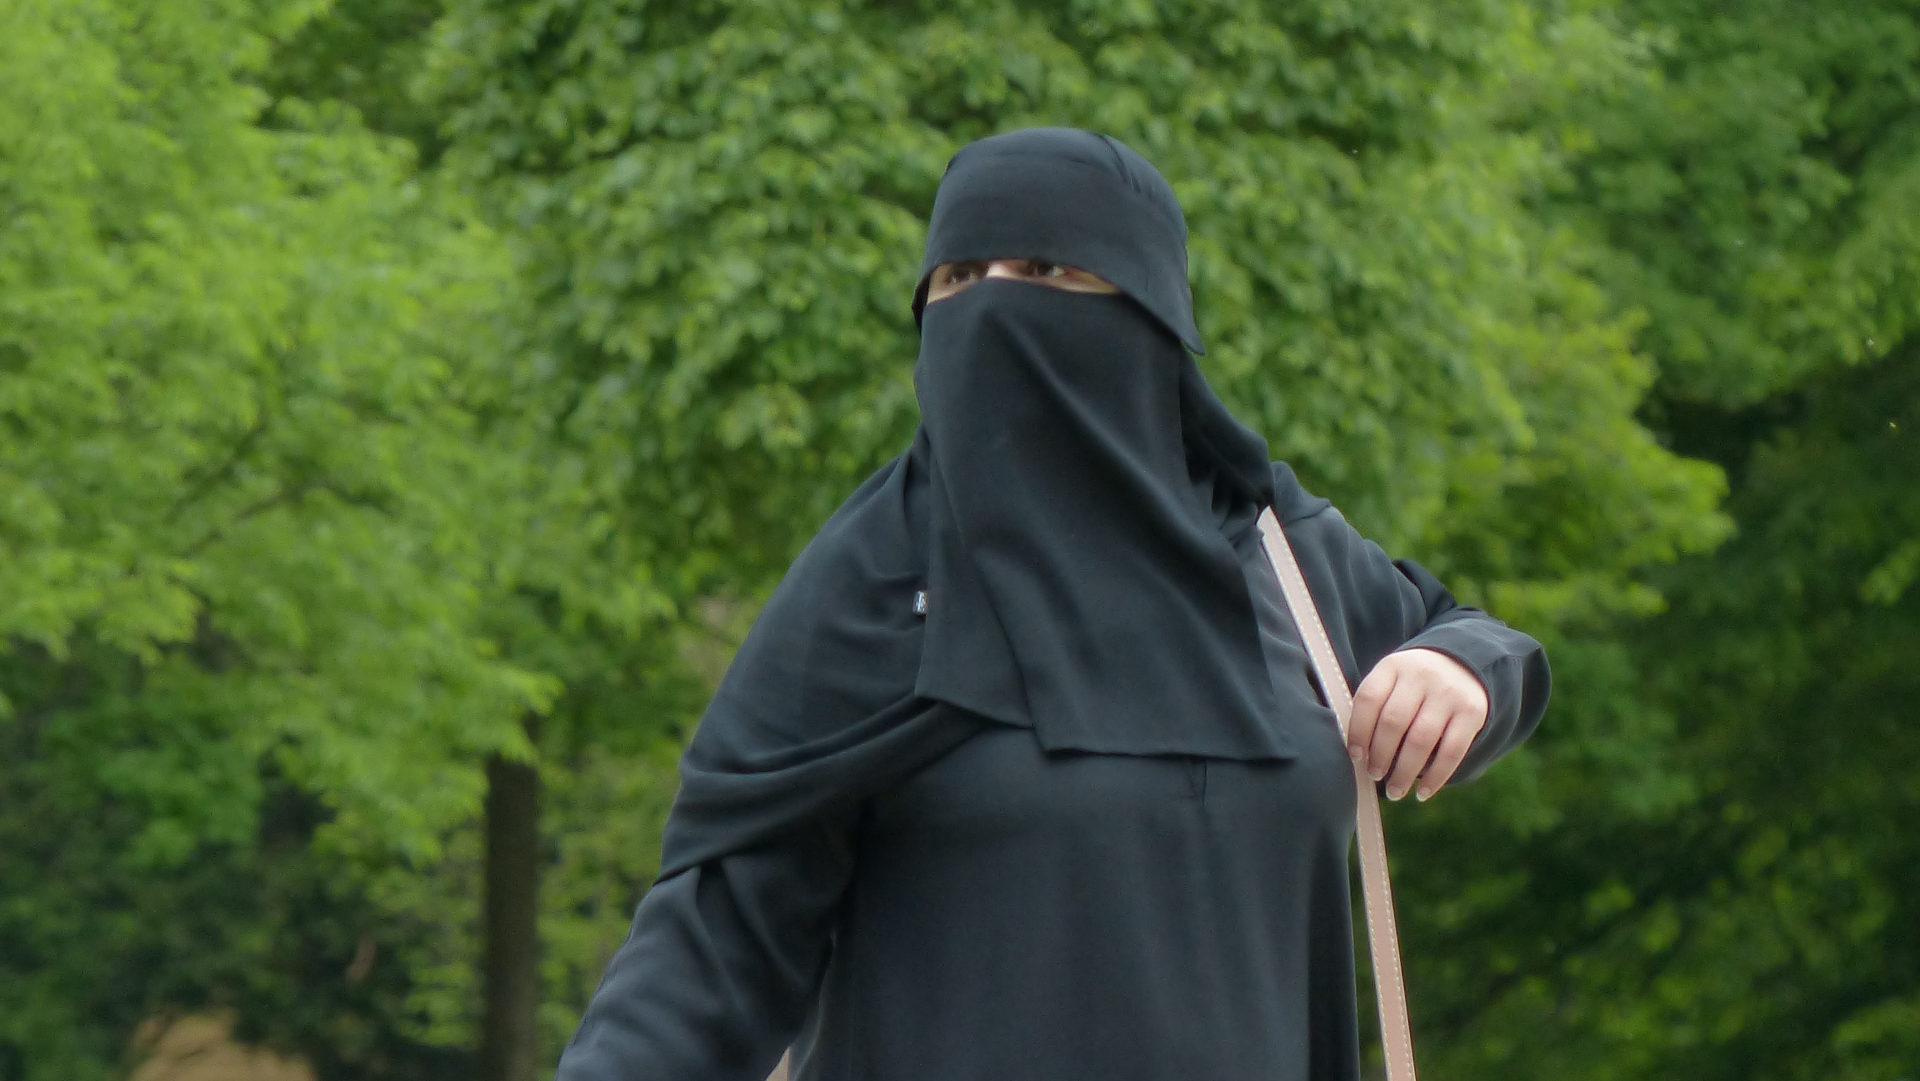 Muslimin mit Niqab